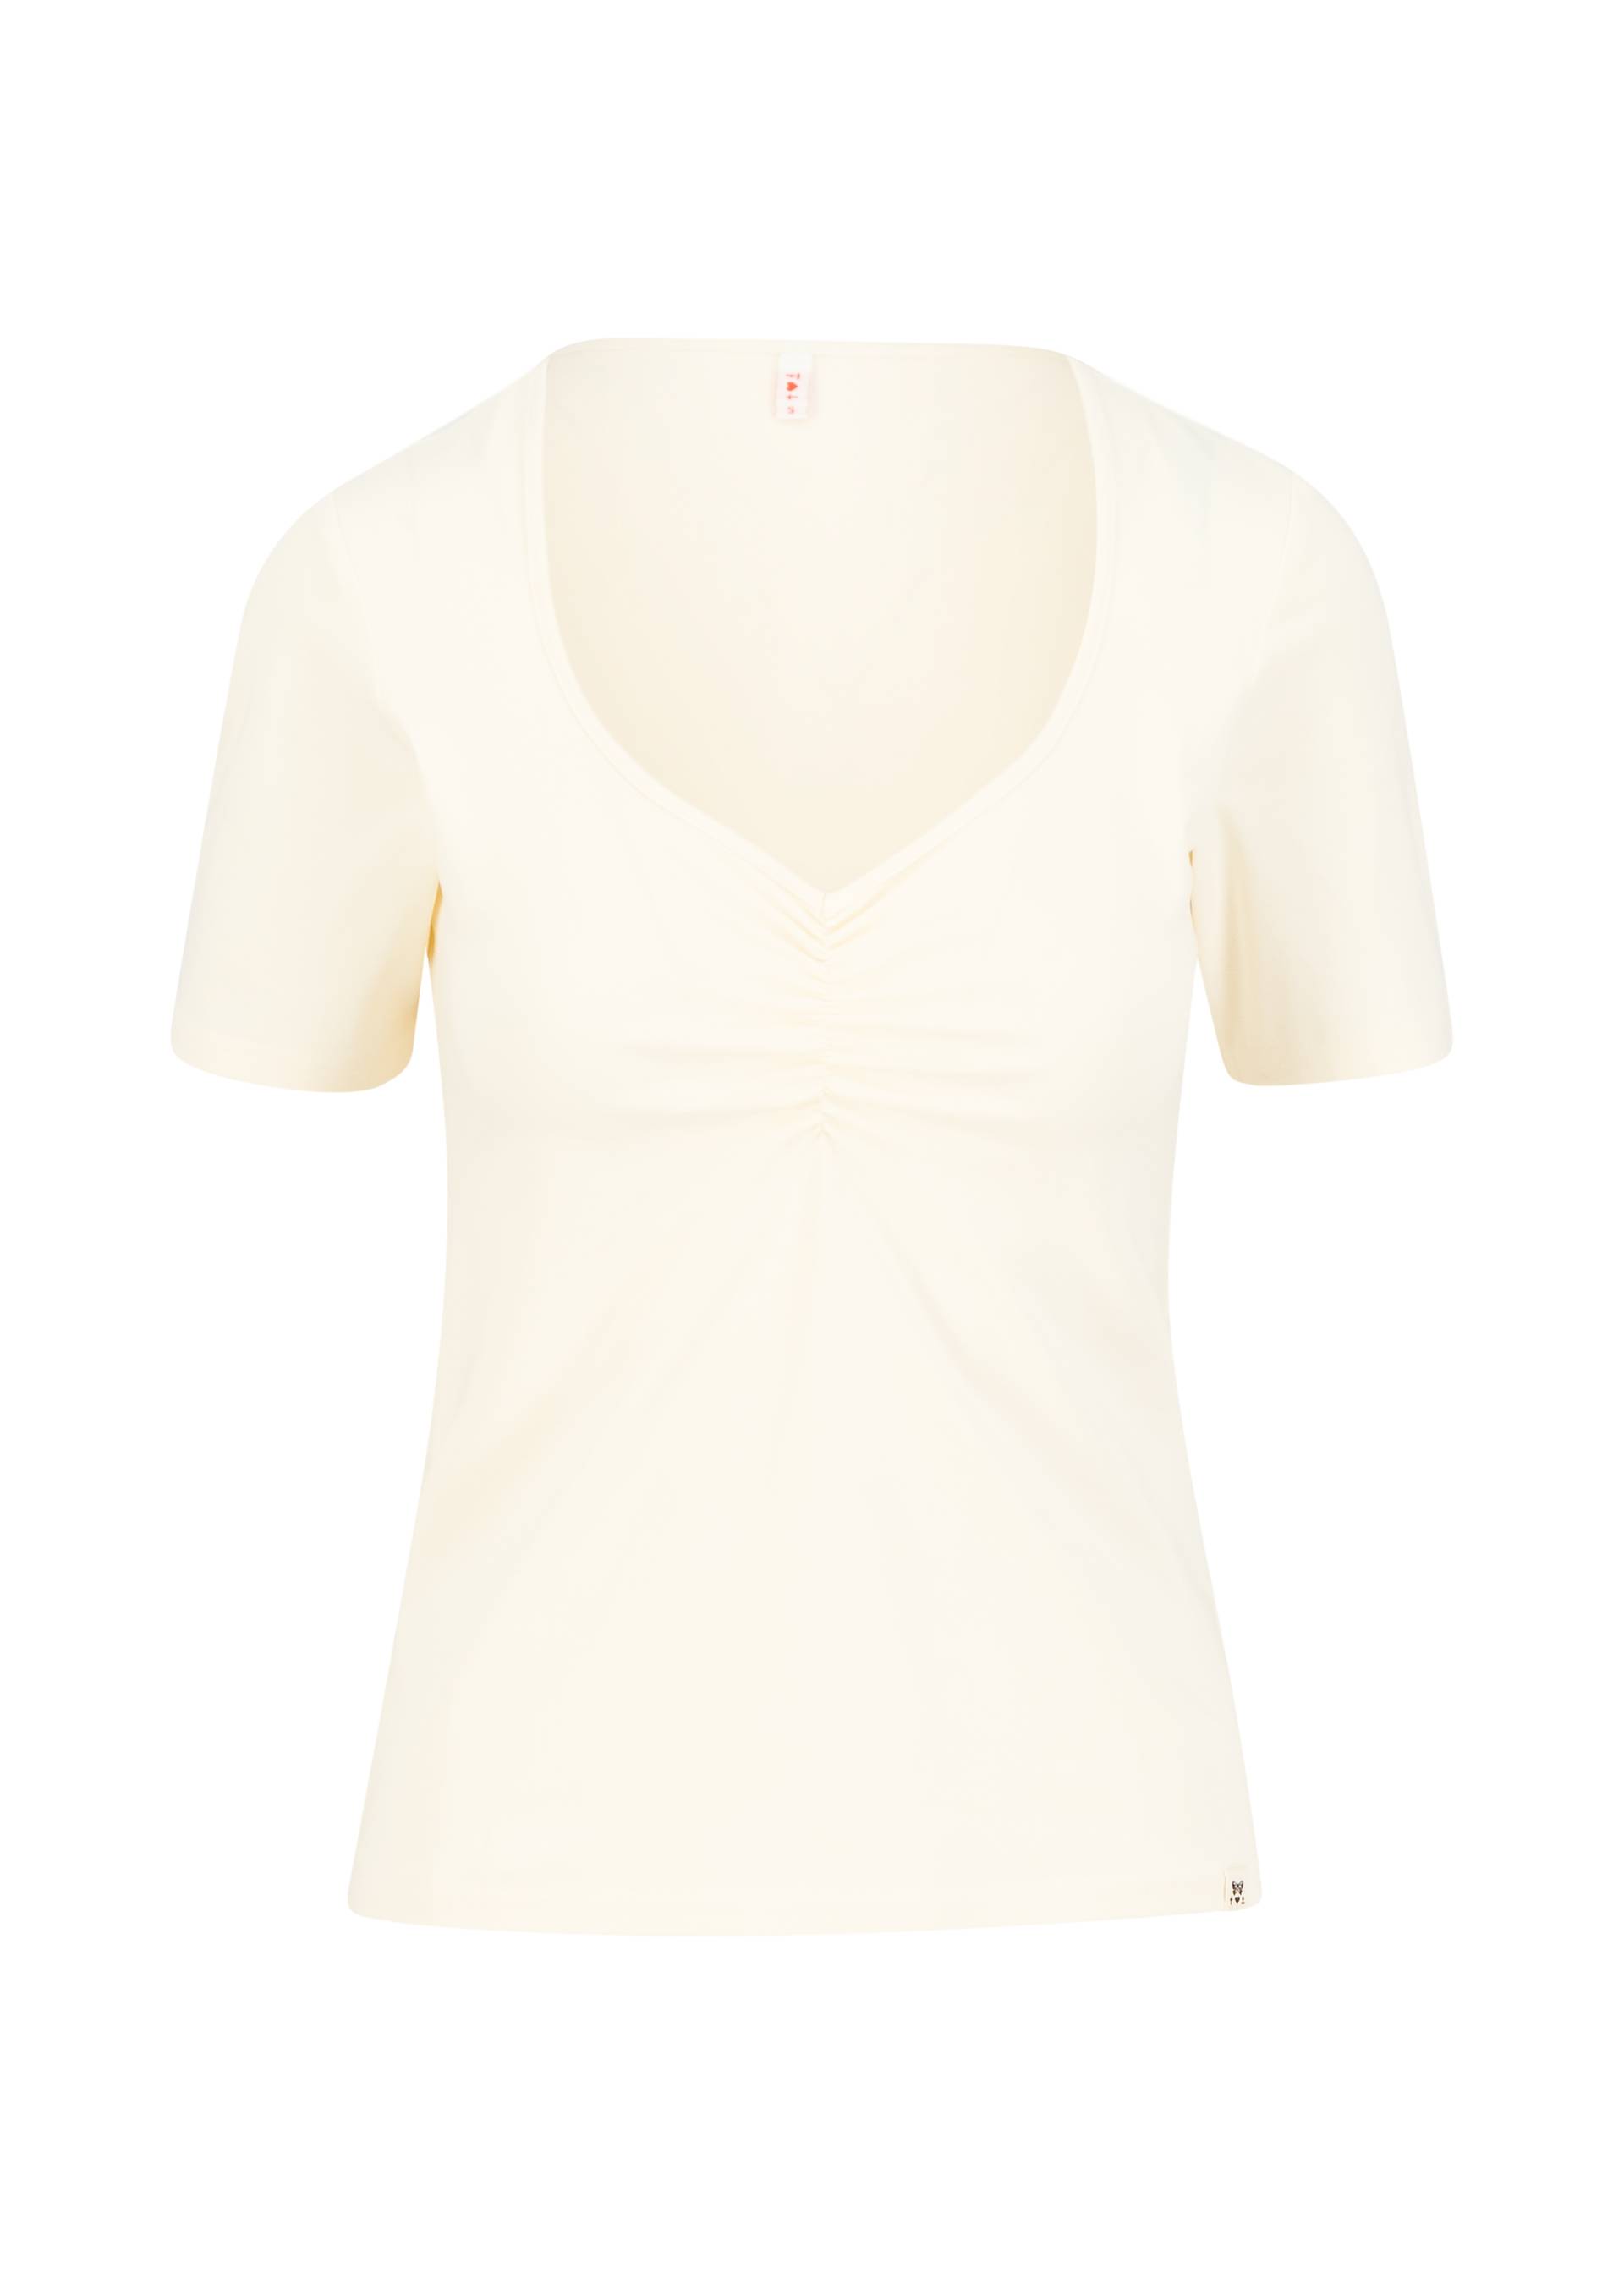 T-Shirt Balconnet Féminin, level up white, Shirts, Weiß